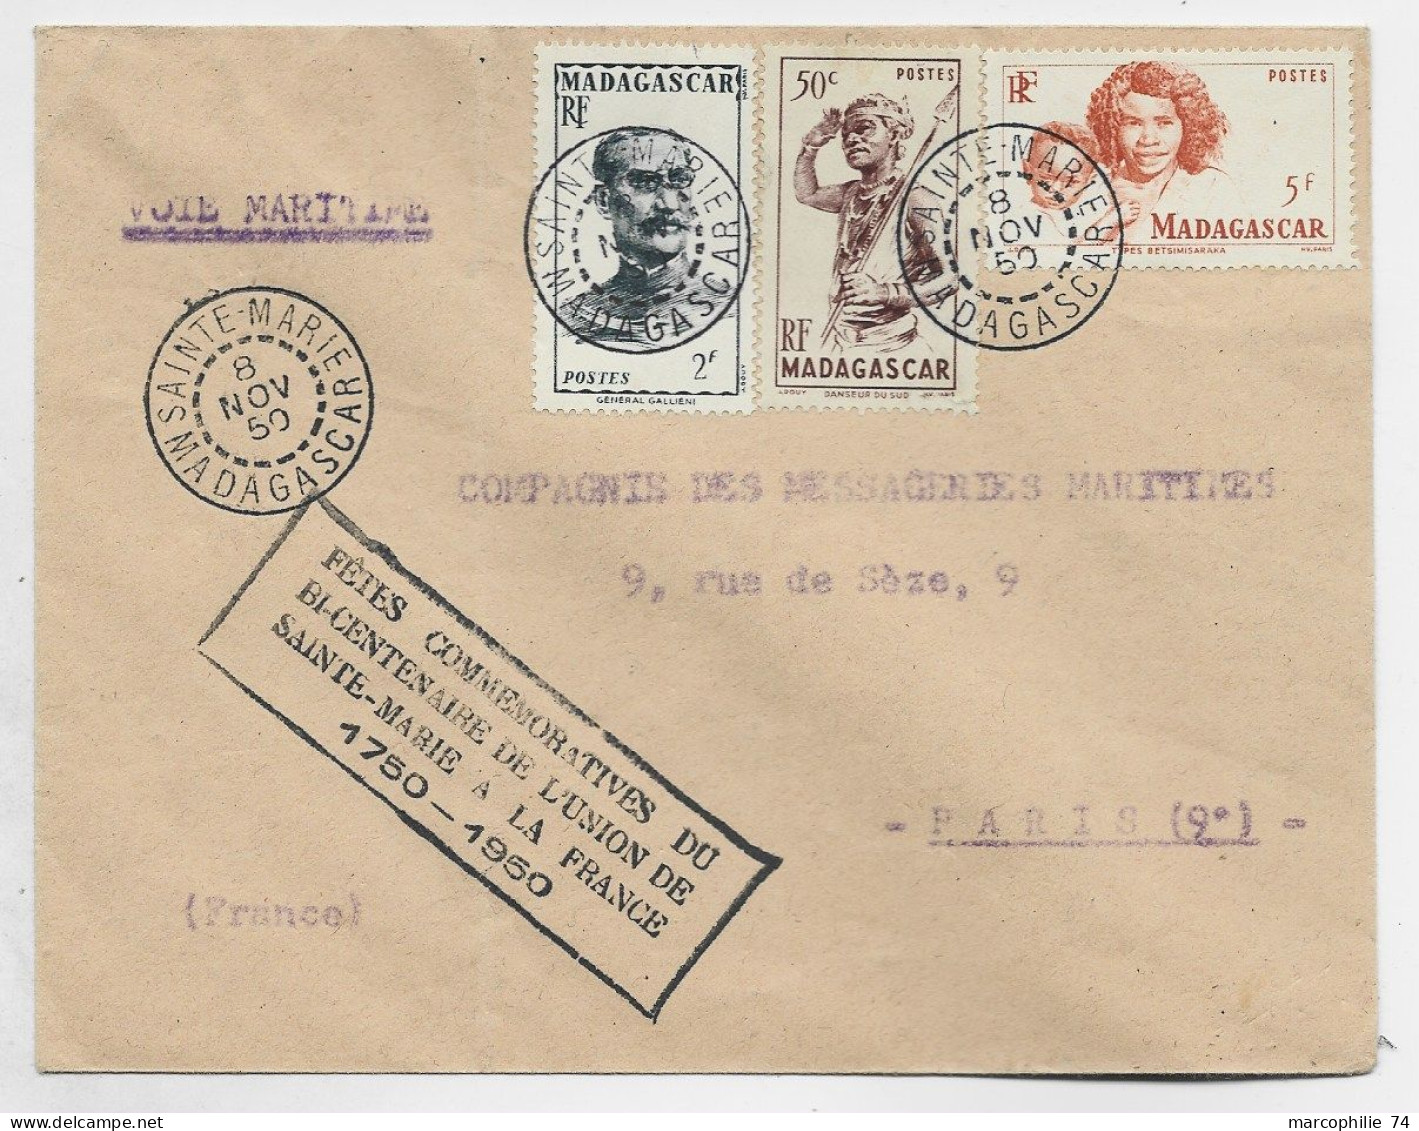 MADAGASCAR 2FR+50C+5FR LETTRE SAINTE MARIE 8 NOV 1950 VOIE MARITIME + BICENTENAIRE DE L'UNION 1750 1950 - Covers & Documents